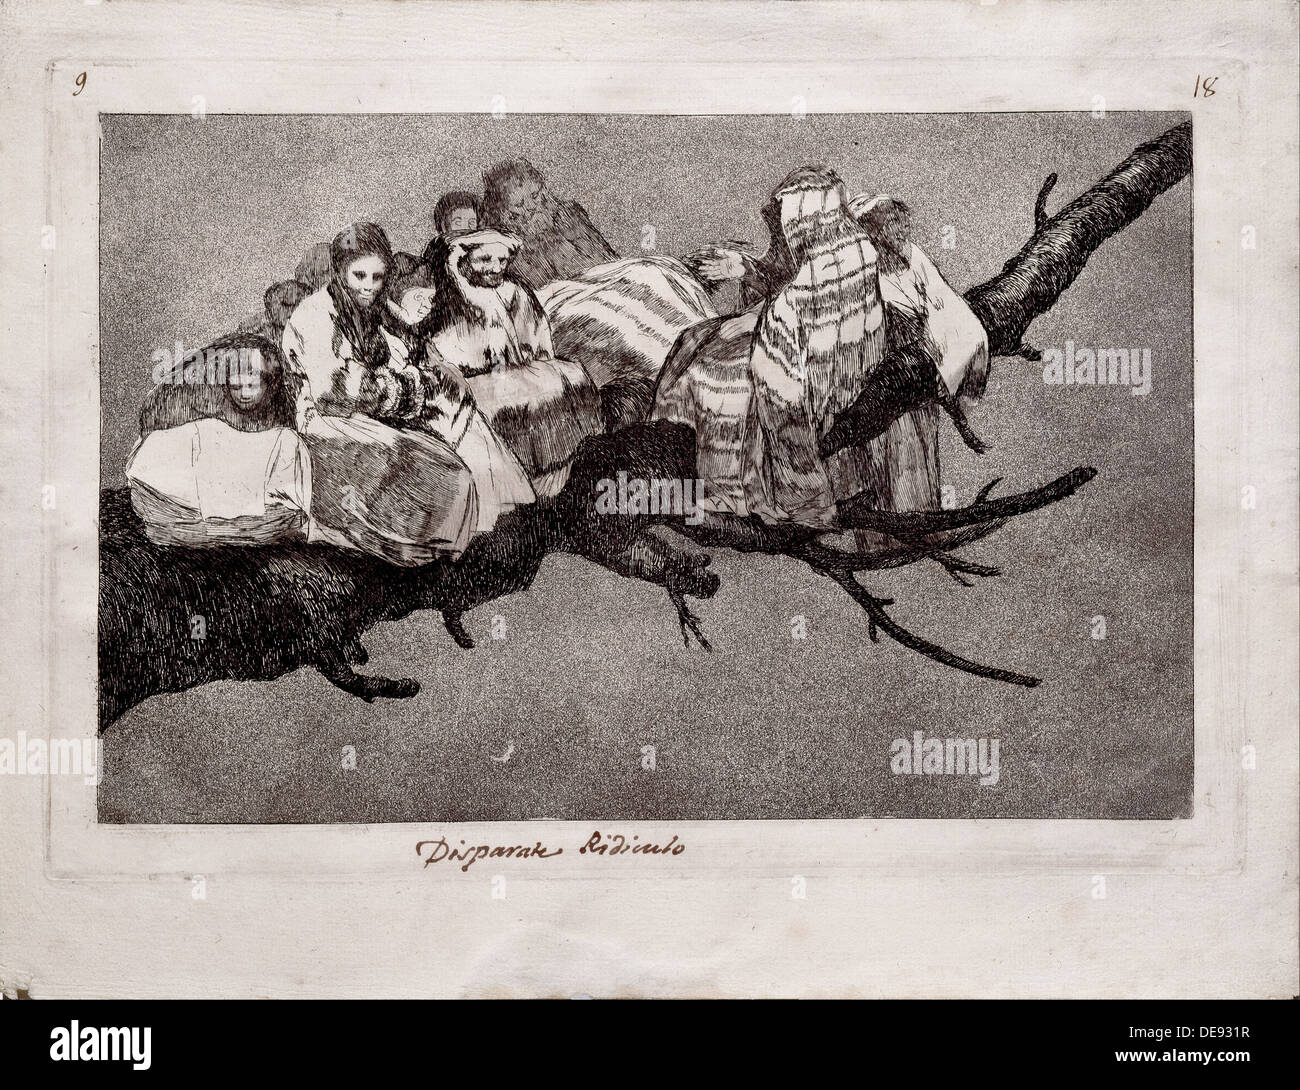 Folie ridicule (de la série Los disparates (Follies), 1815-1819. Artiste : Goya, Francisco de (1746-1828) Banque D'Images